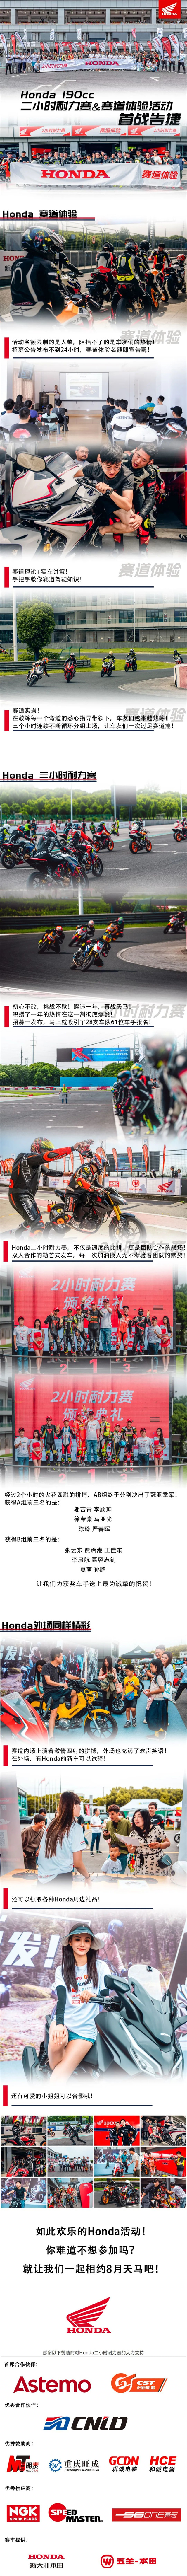 Honda 190cc二小時耐力賽&賽道體驗活動首戰告捷